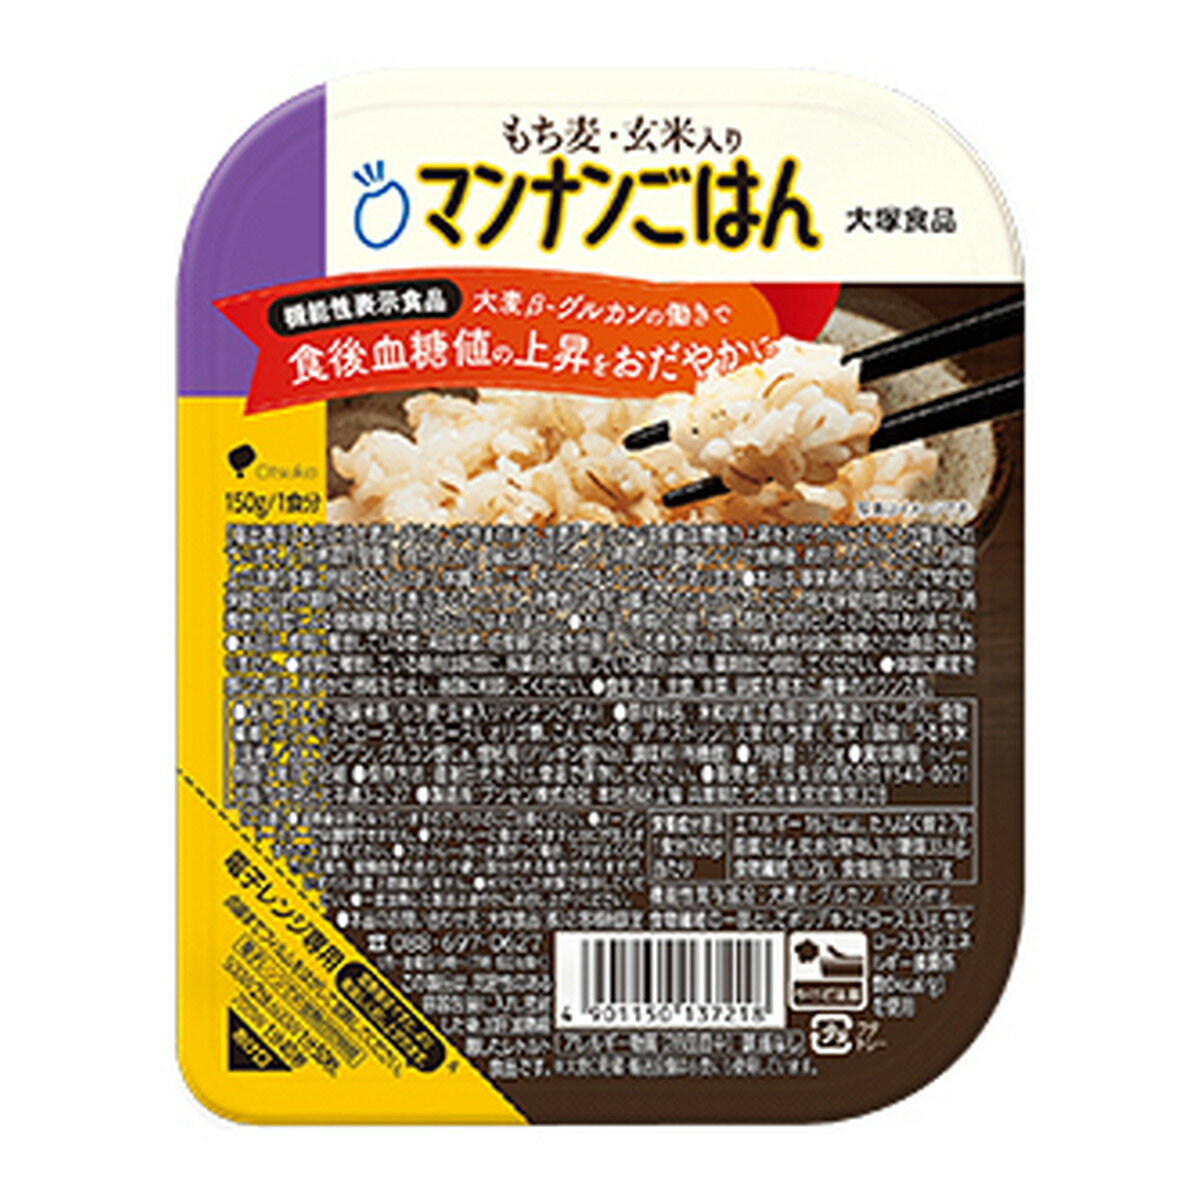 【サマーセール】大塚食品 もち麦玄米入り マンナンごはん パックごはん レトルト包装米飯 150g入